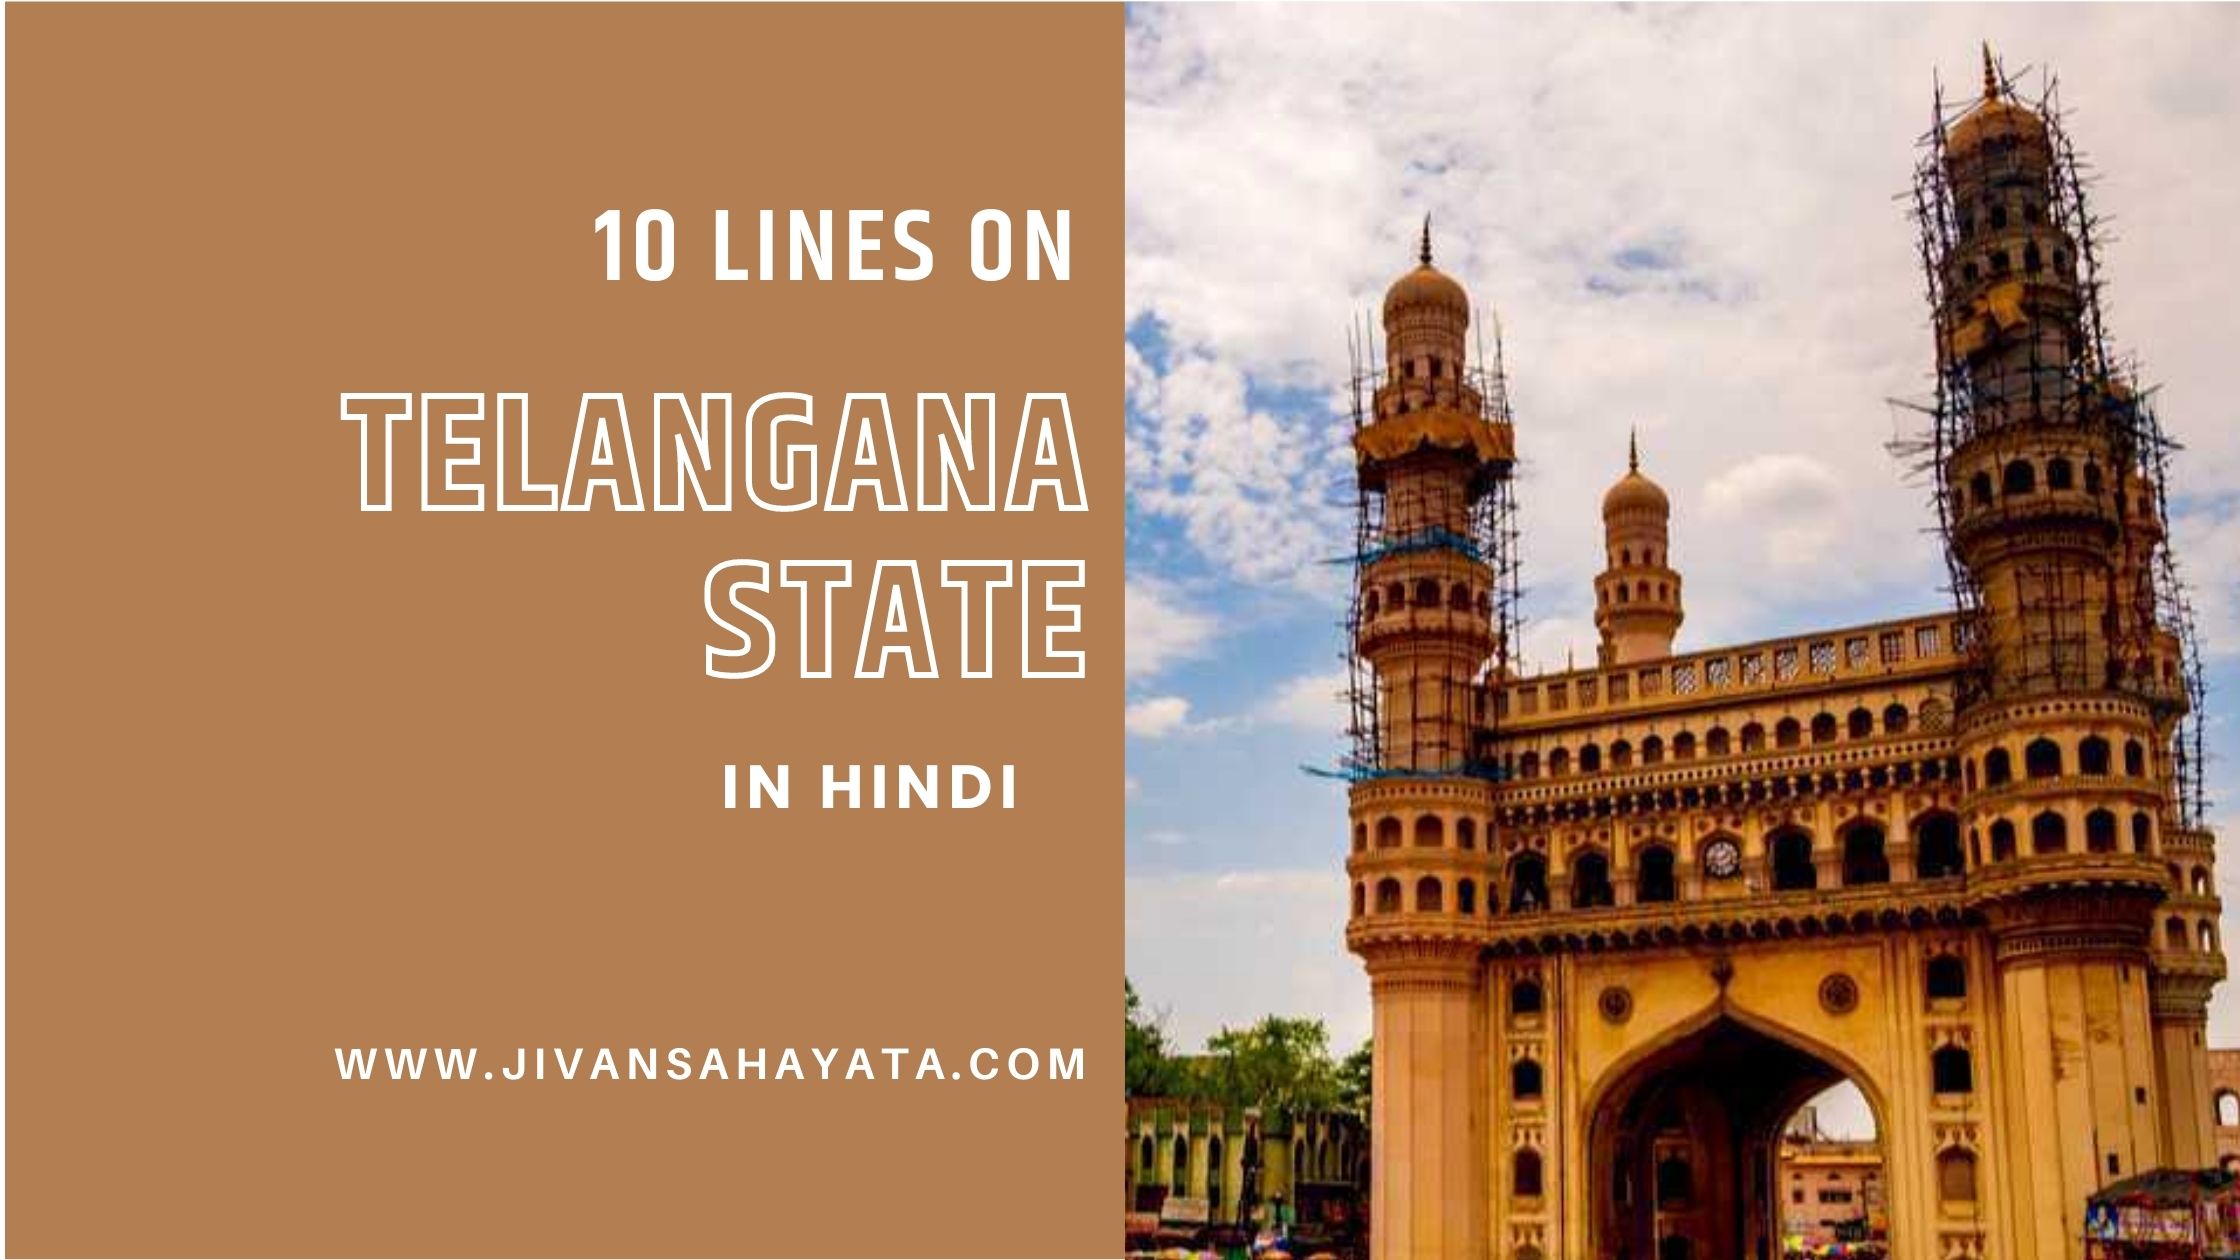 10 lines on Telangana in Hindi - तेलंगाना राज्य पर 10 वाक्य